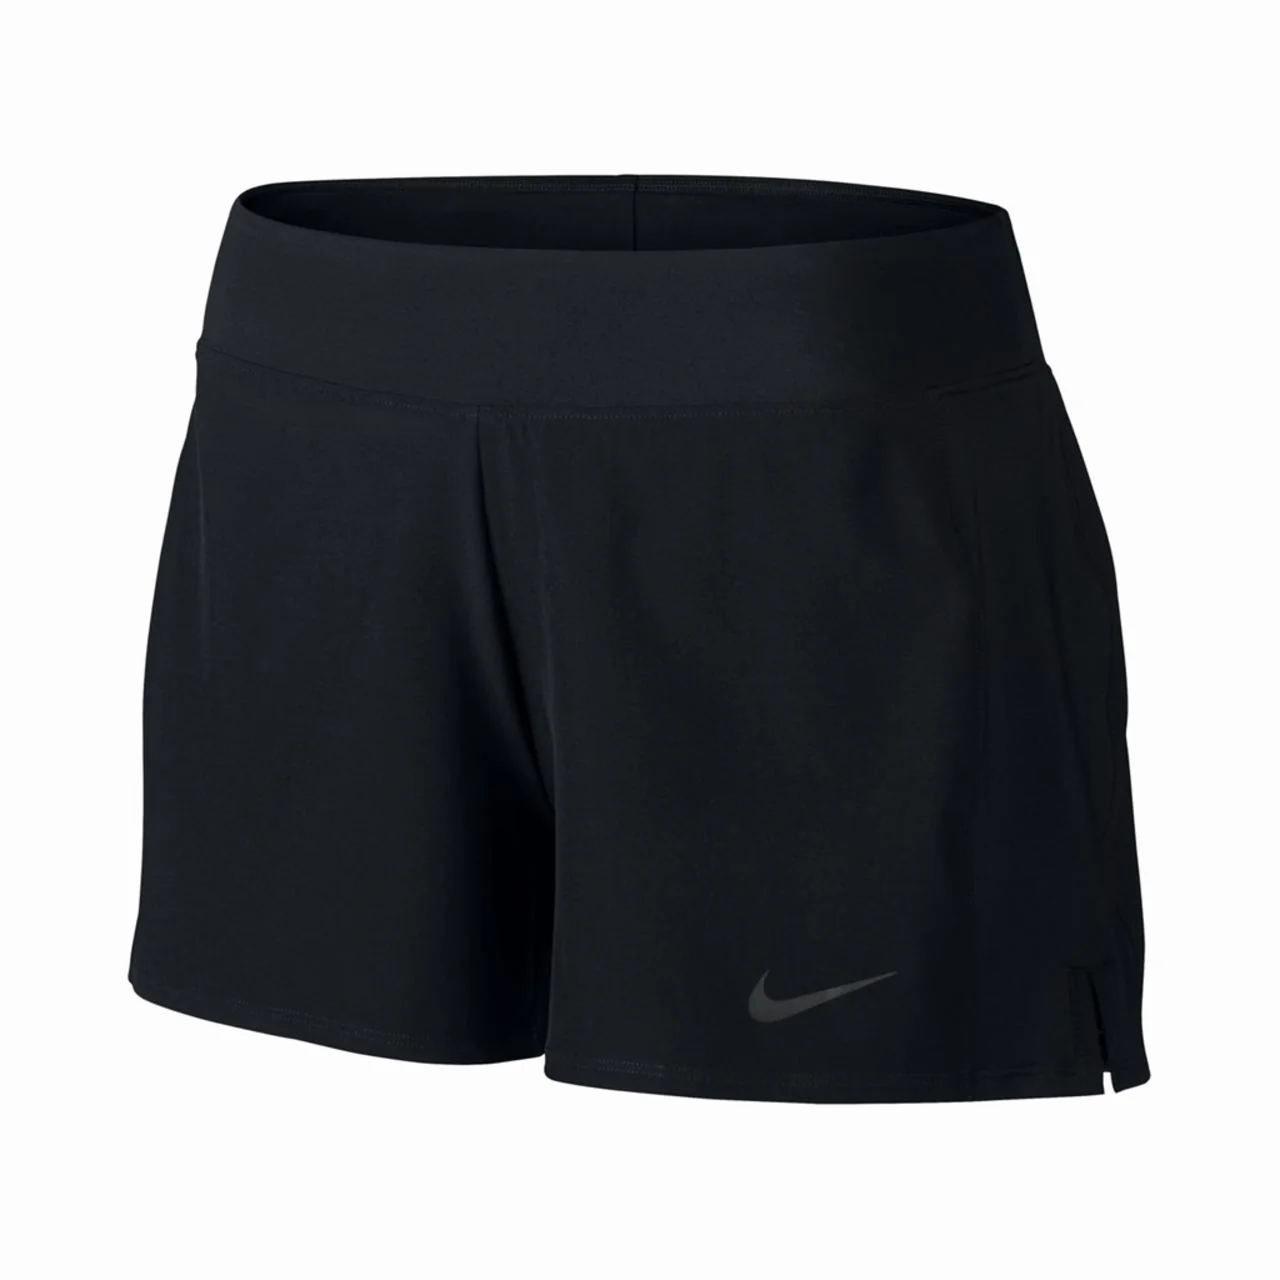 Nike Baseline Shorts Women Black Size L